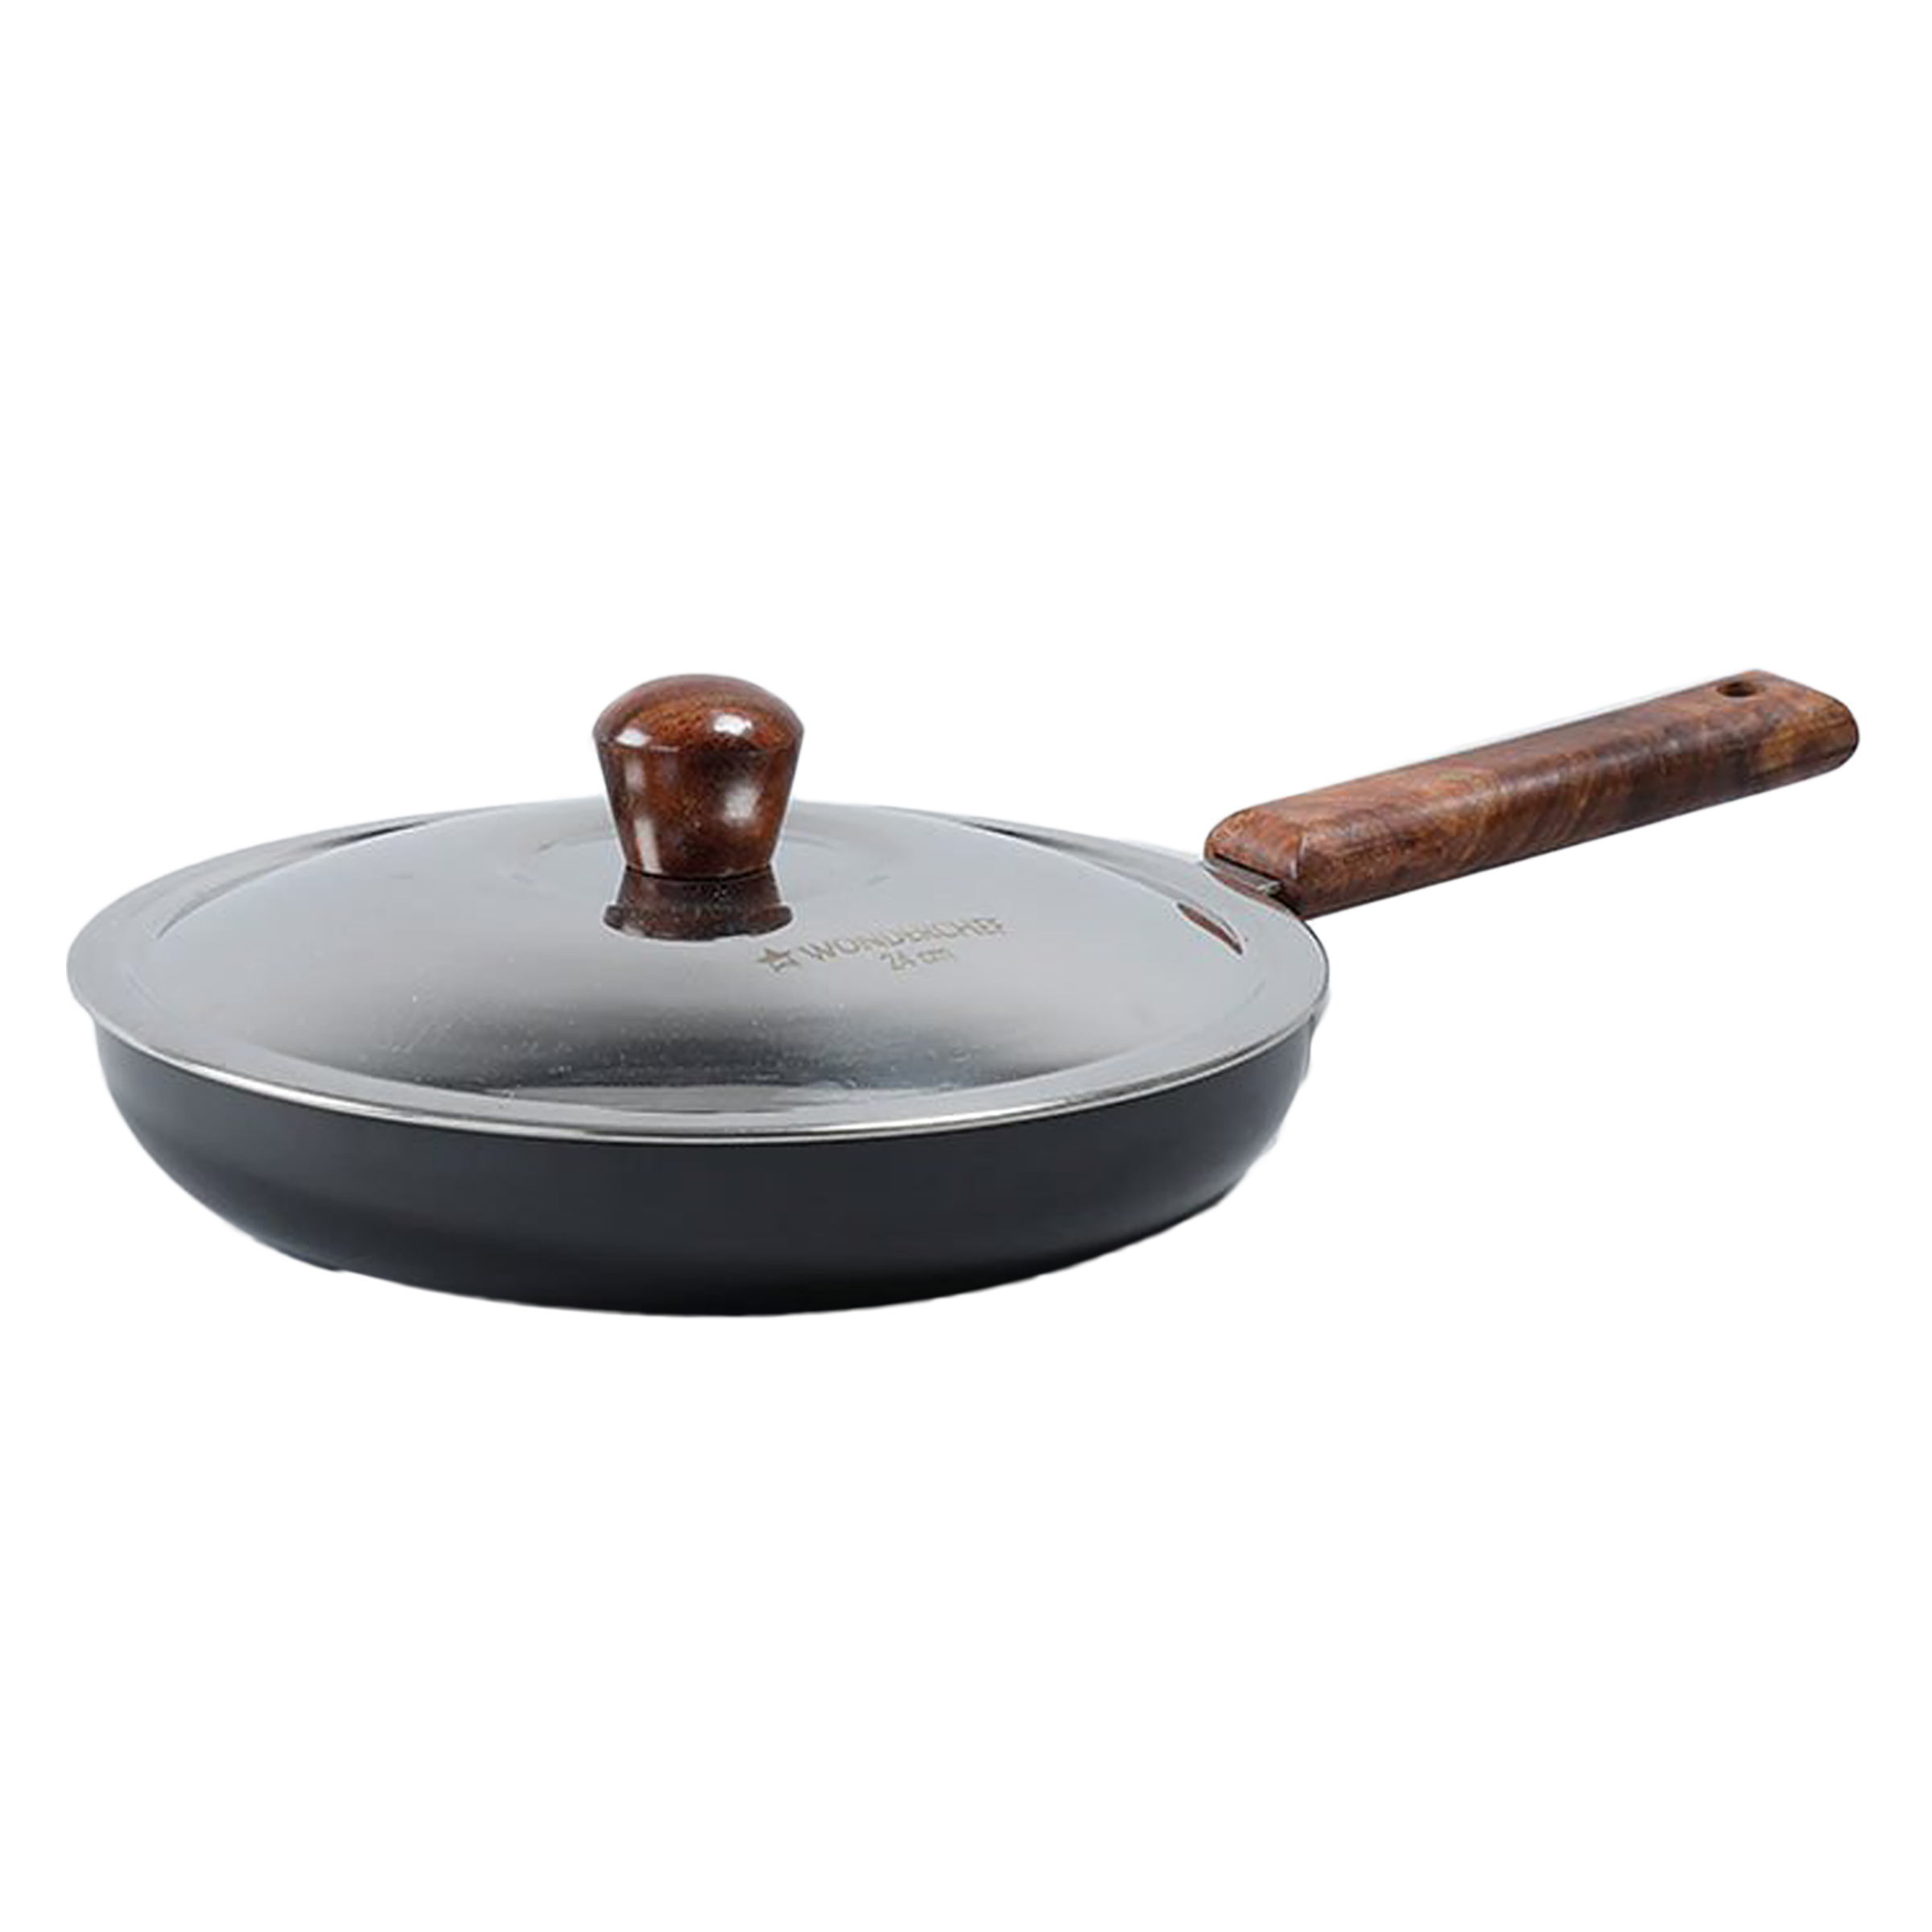 Wonderchef Ebony Frying Pan with Lid (Hard Anodized Coating, 63152887, Black)_1